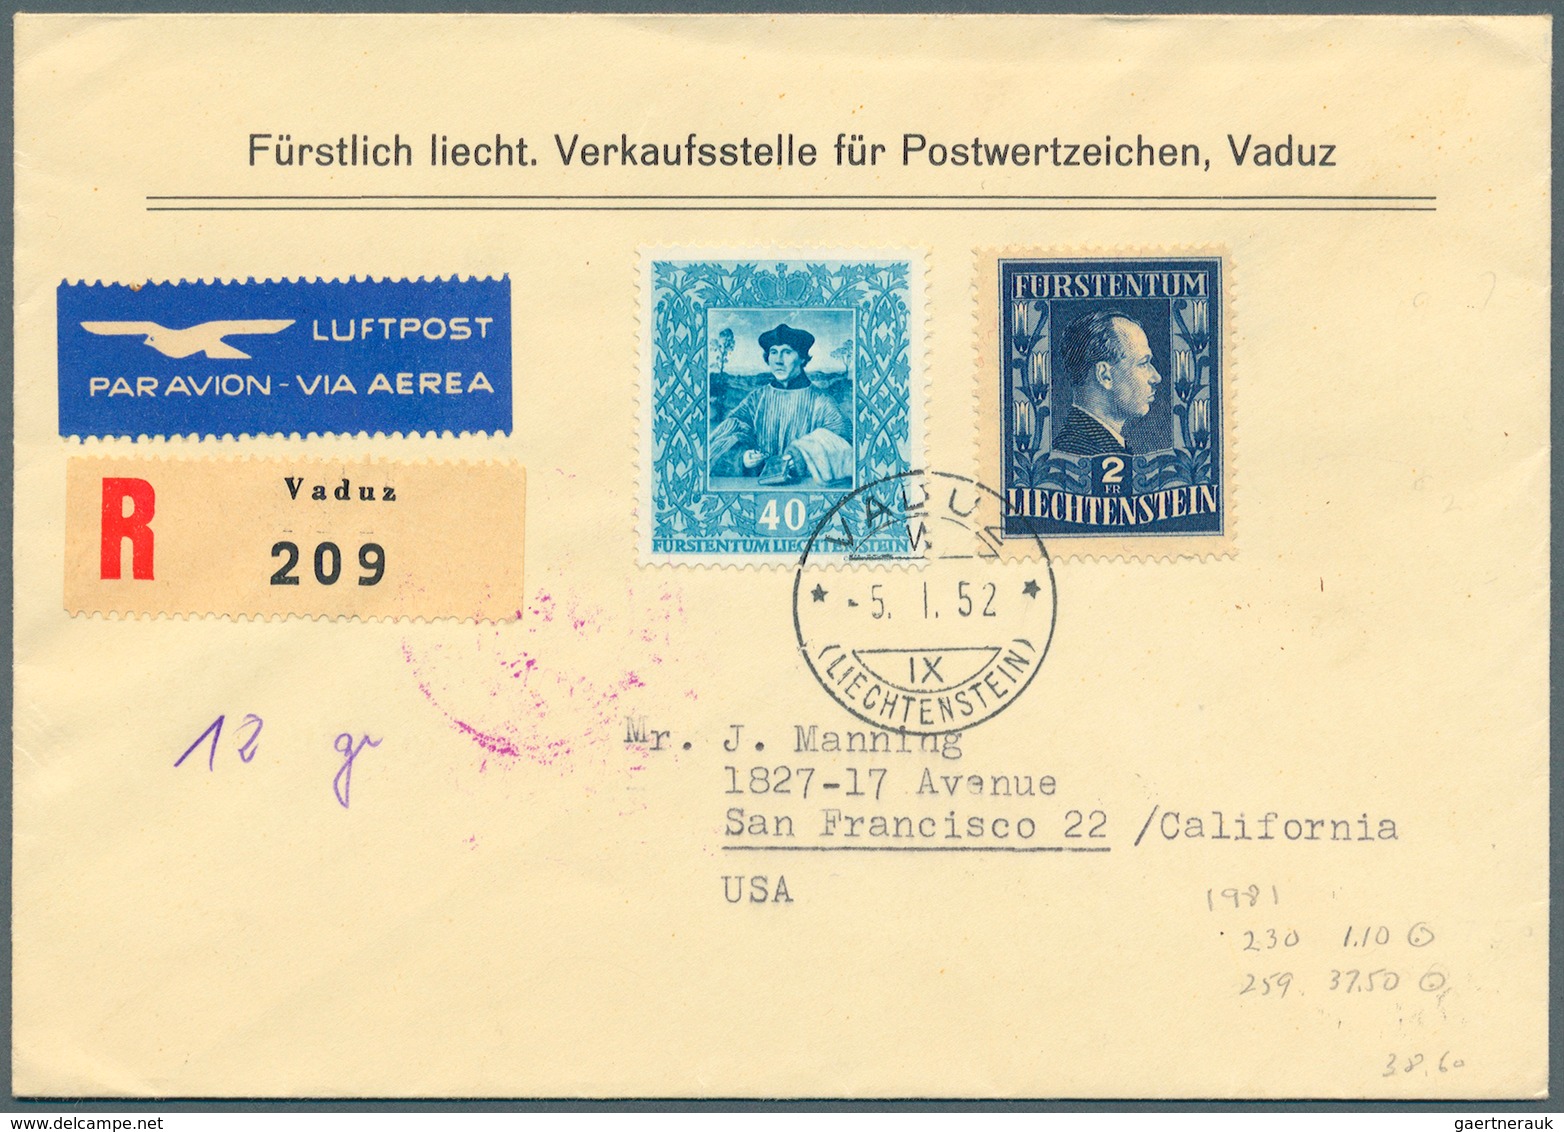 27204 Liechtenstein: 1930er/1960er Jahre: Rund 500 Briefe, Karten, FDCs und Ganzsachen, meist aus dem ange